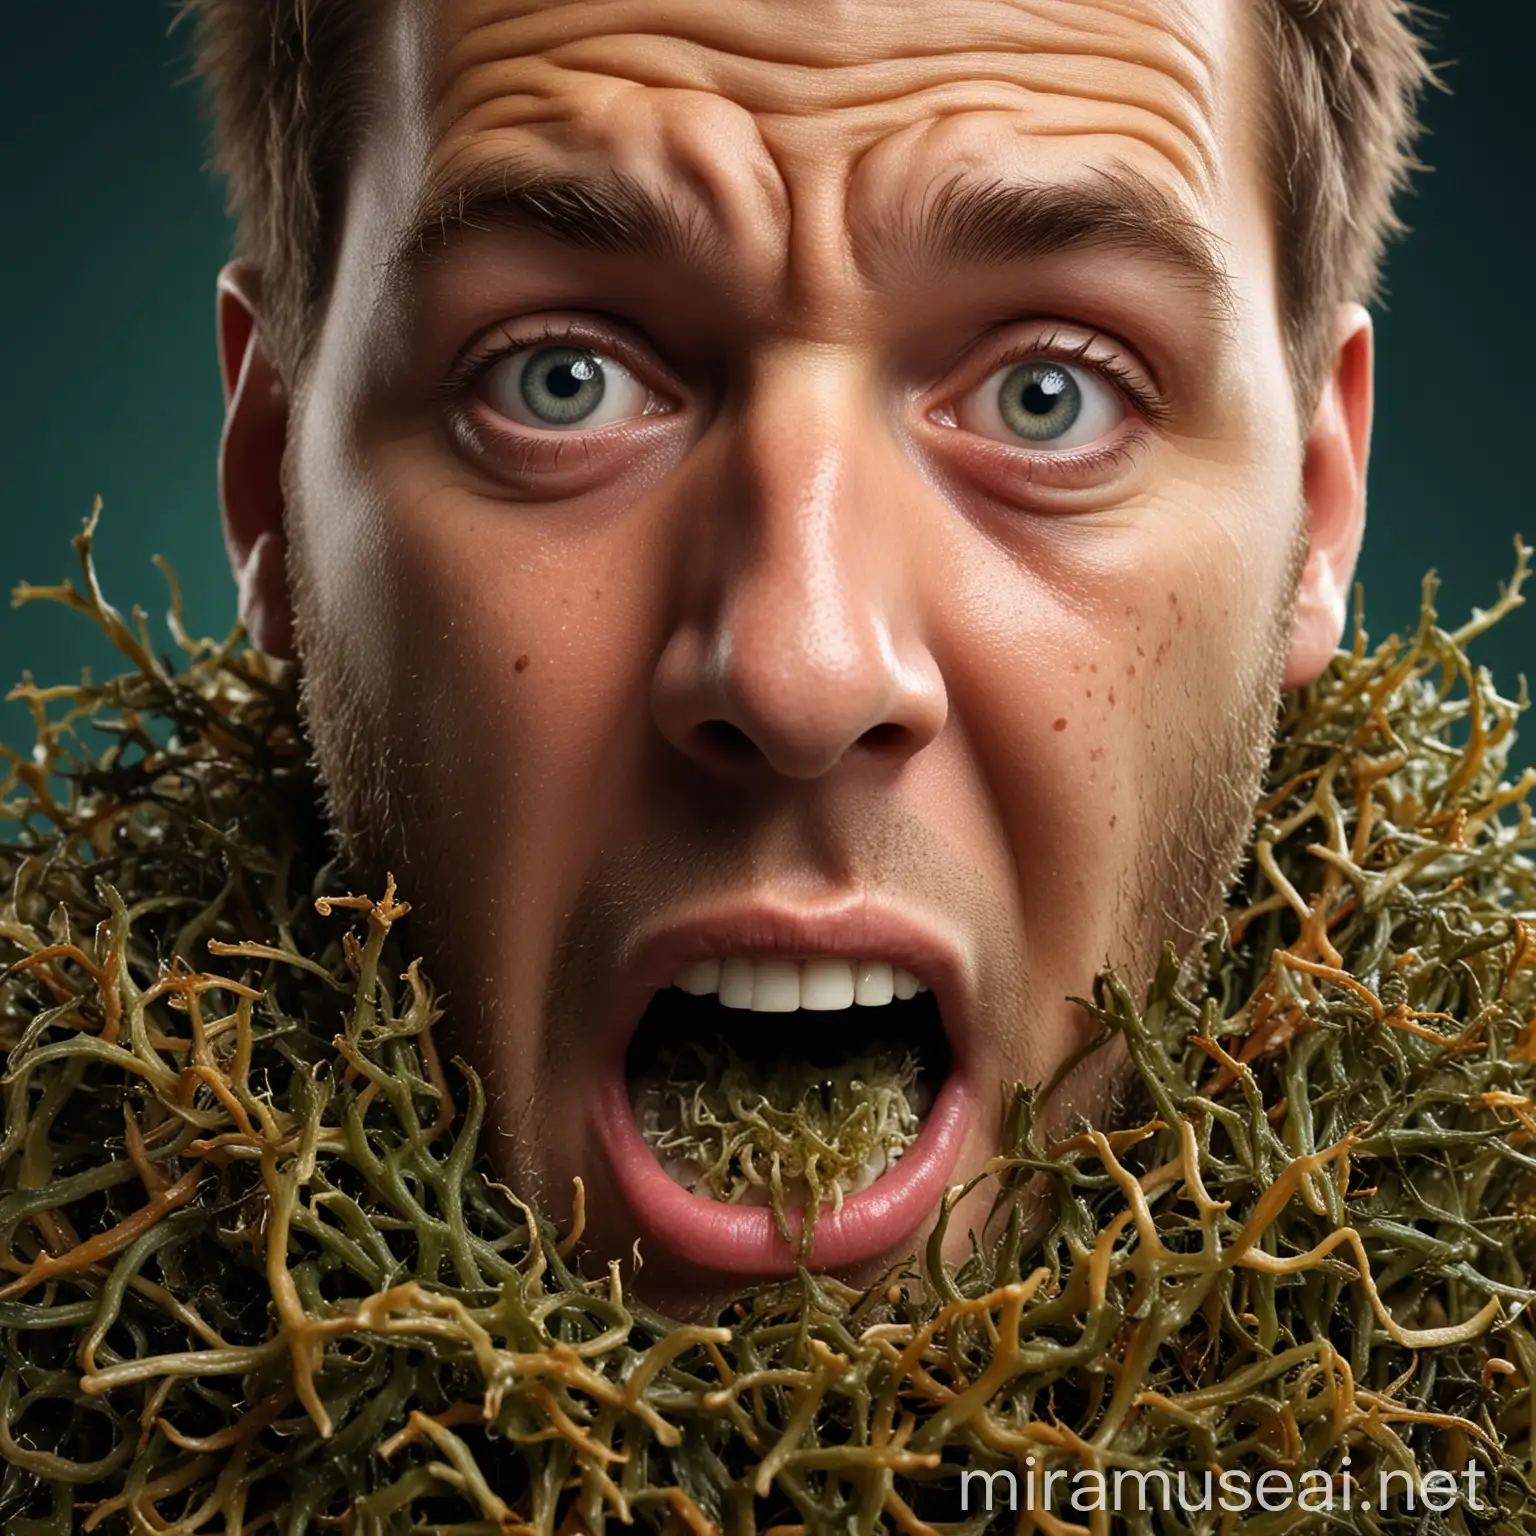 Shocked Man Eating Sea Moss in Detailed 3D Rendering